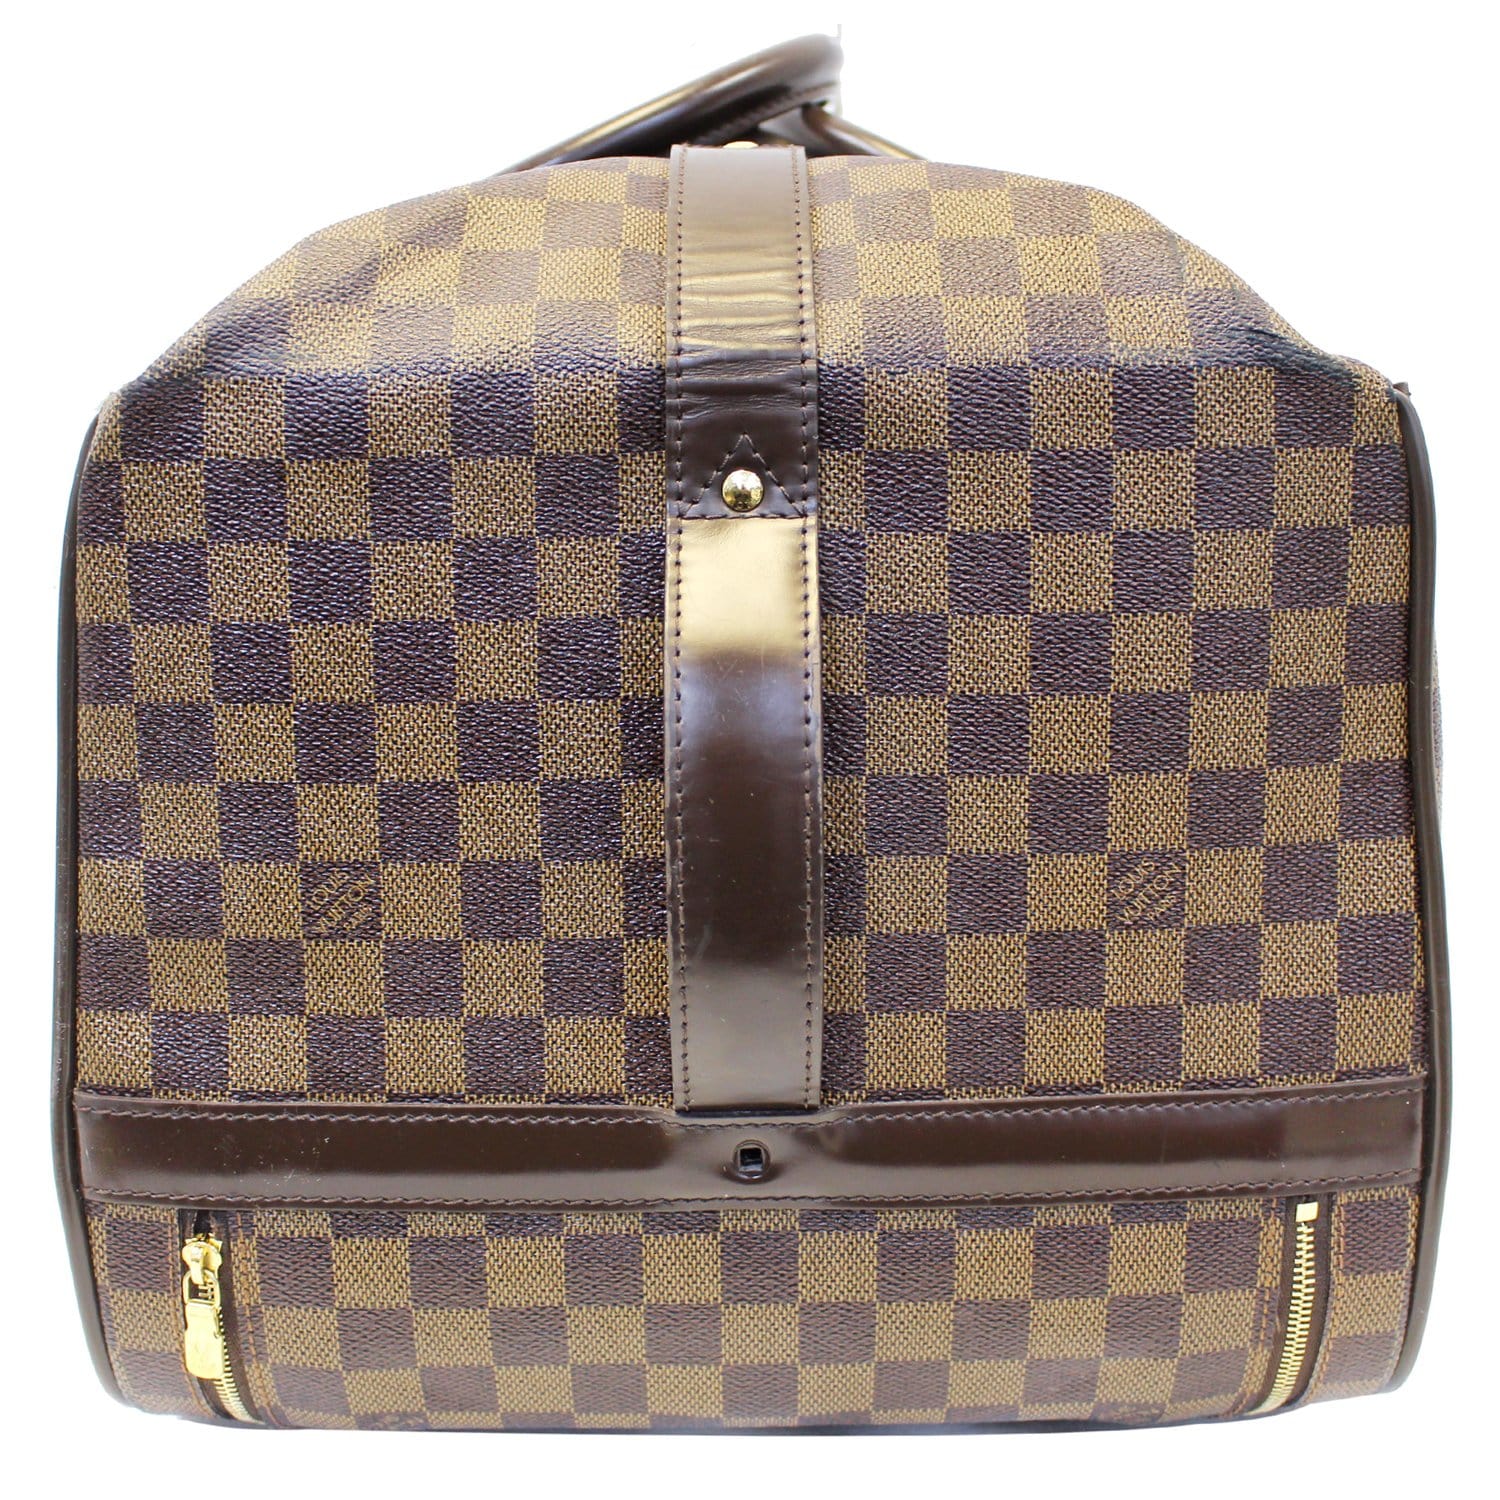 Louis Vuitton Damier Ebene Luggage Rolling Bag